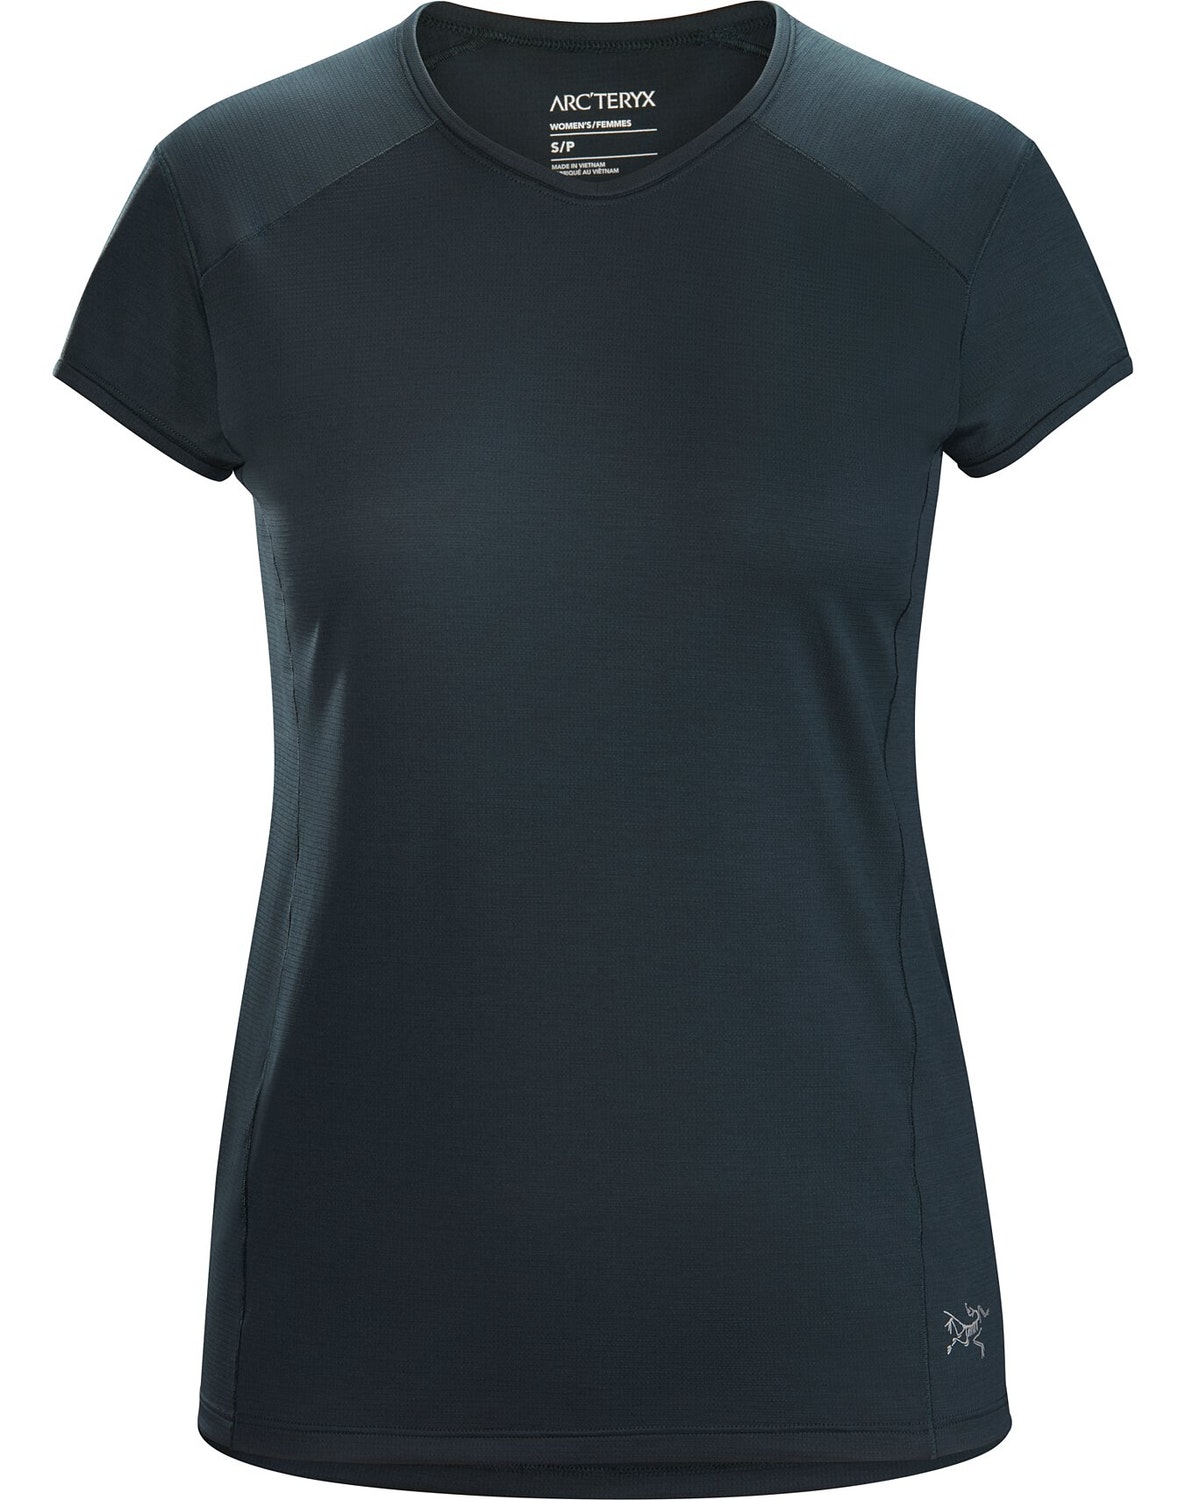 T-shirt Arc'teryx Kapta Donna Blu Marino - IT-945173